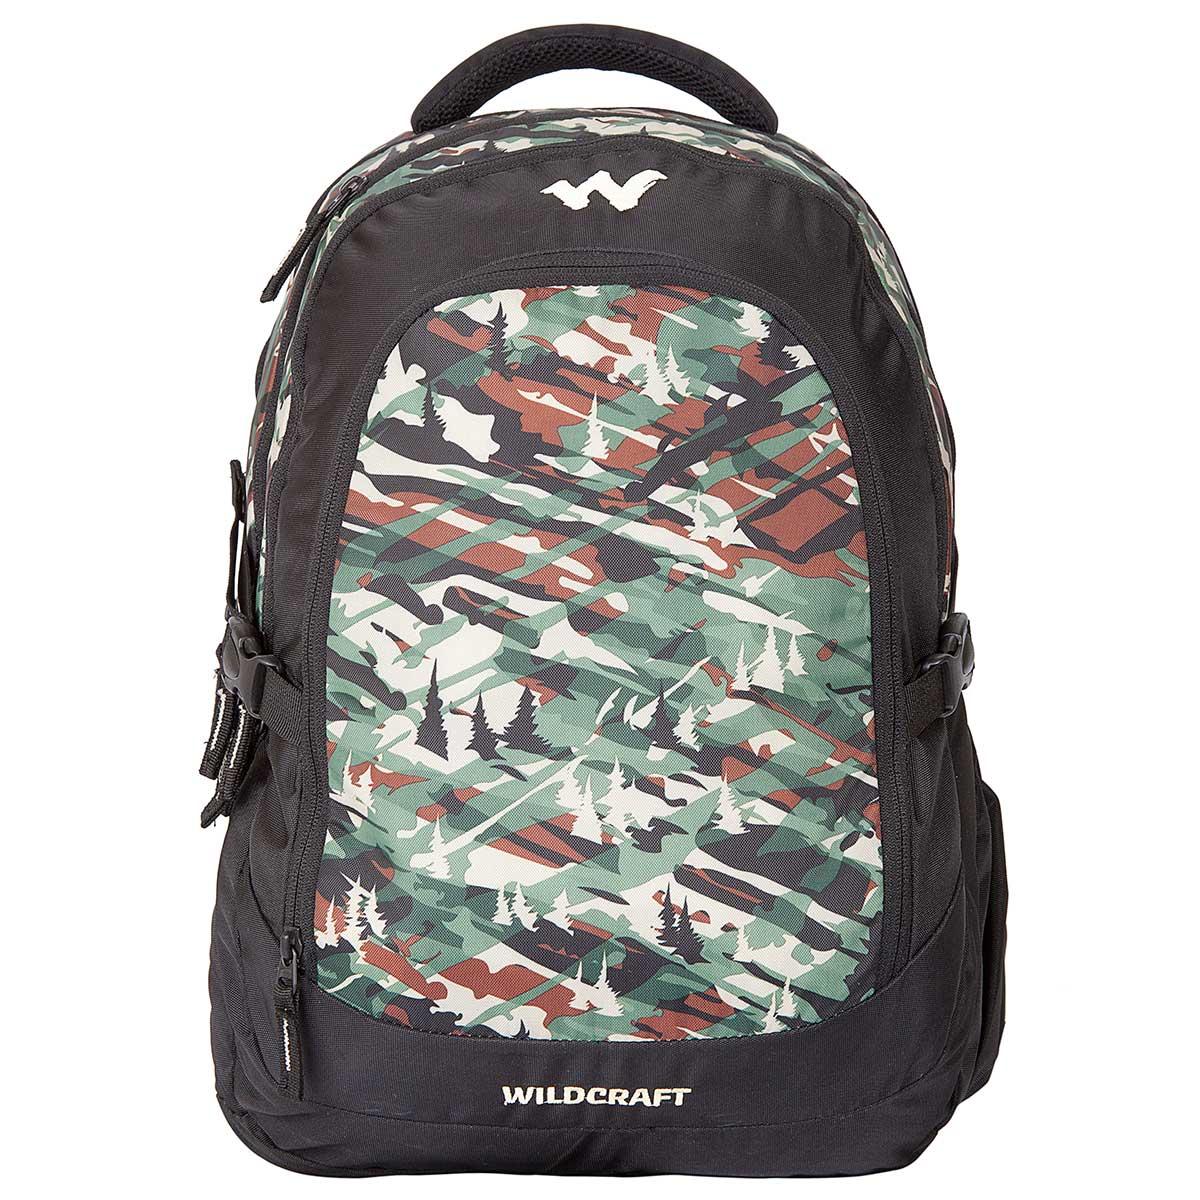 Buy Wildcraft Camo 4 Backpack (Green) Online in India